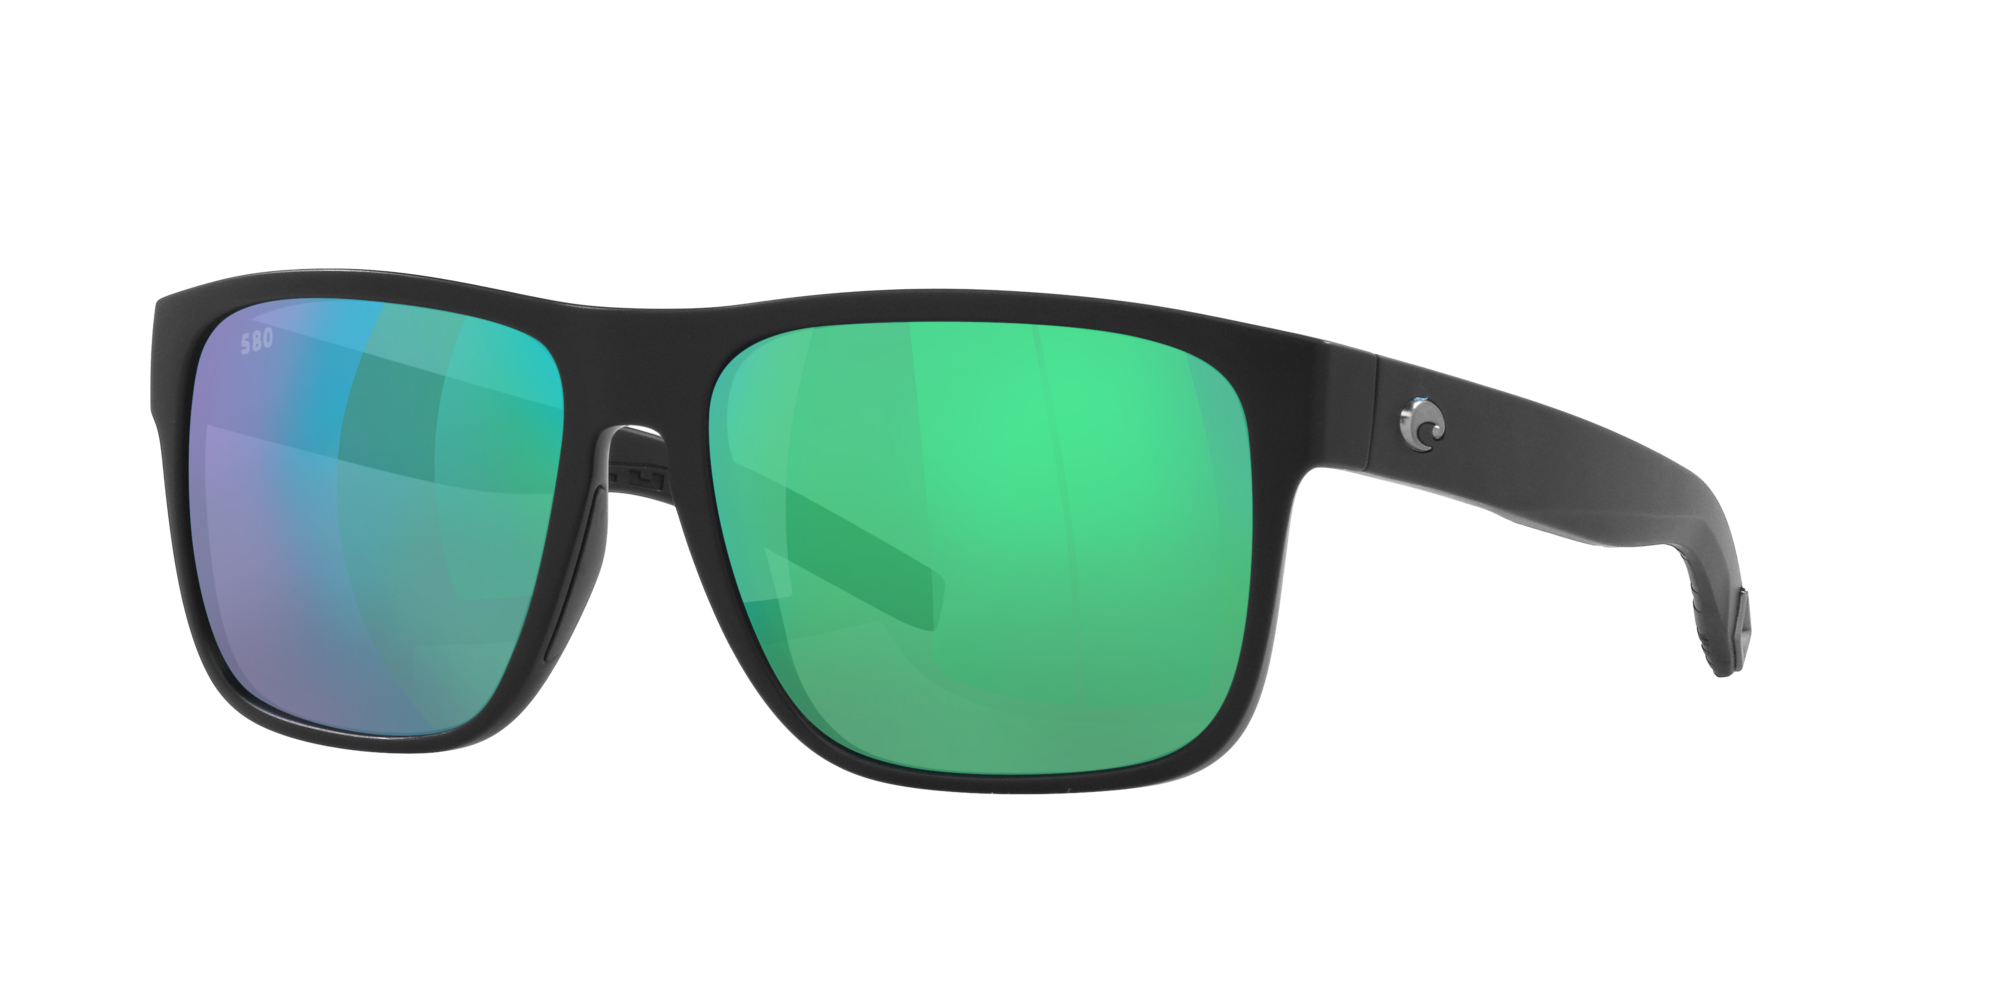 Costa Del Mar Costa Man Sunglasses 6s9013 Spearo Xl In Green Mirror